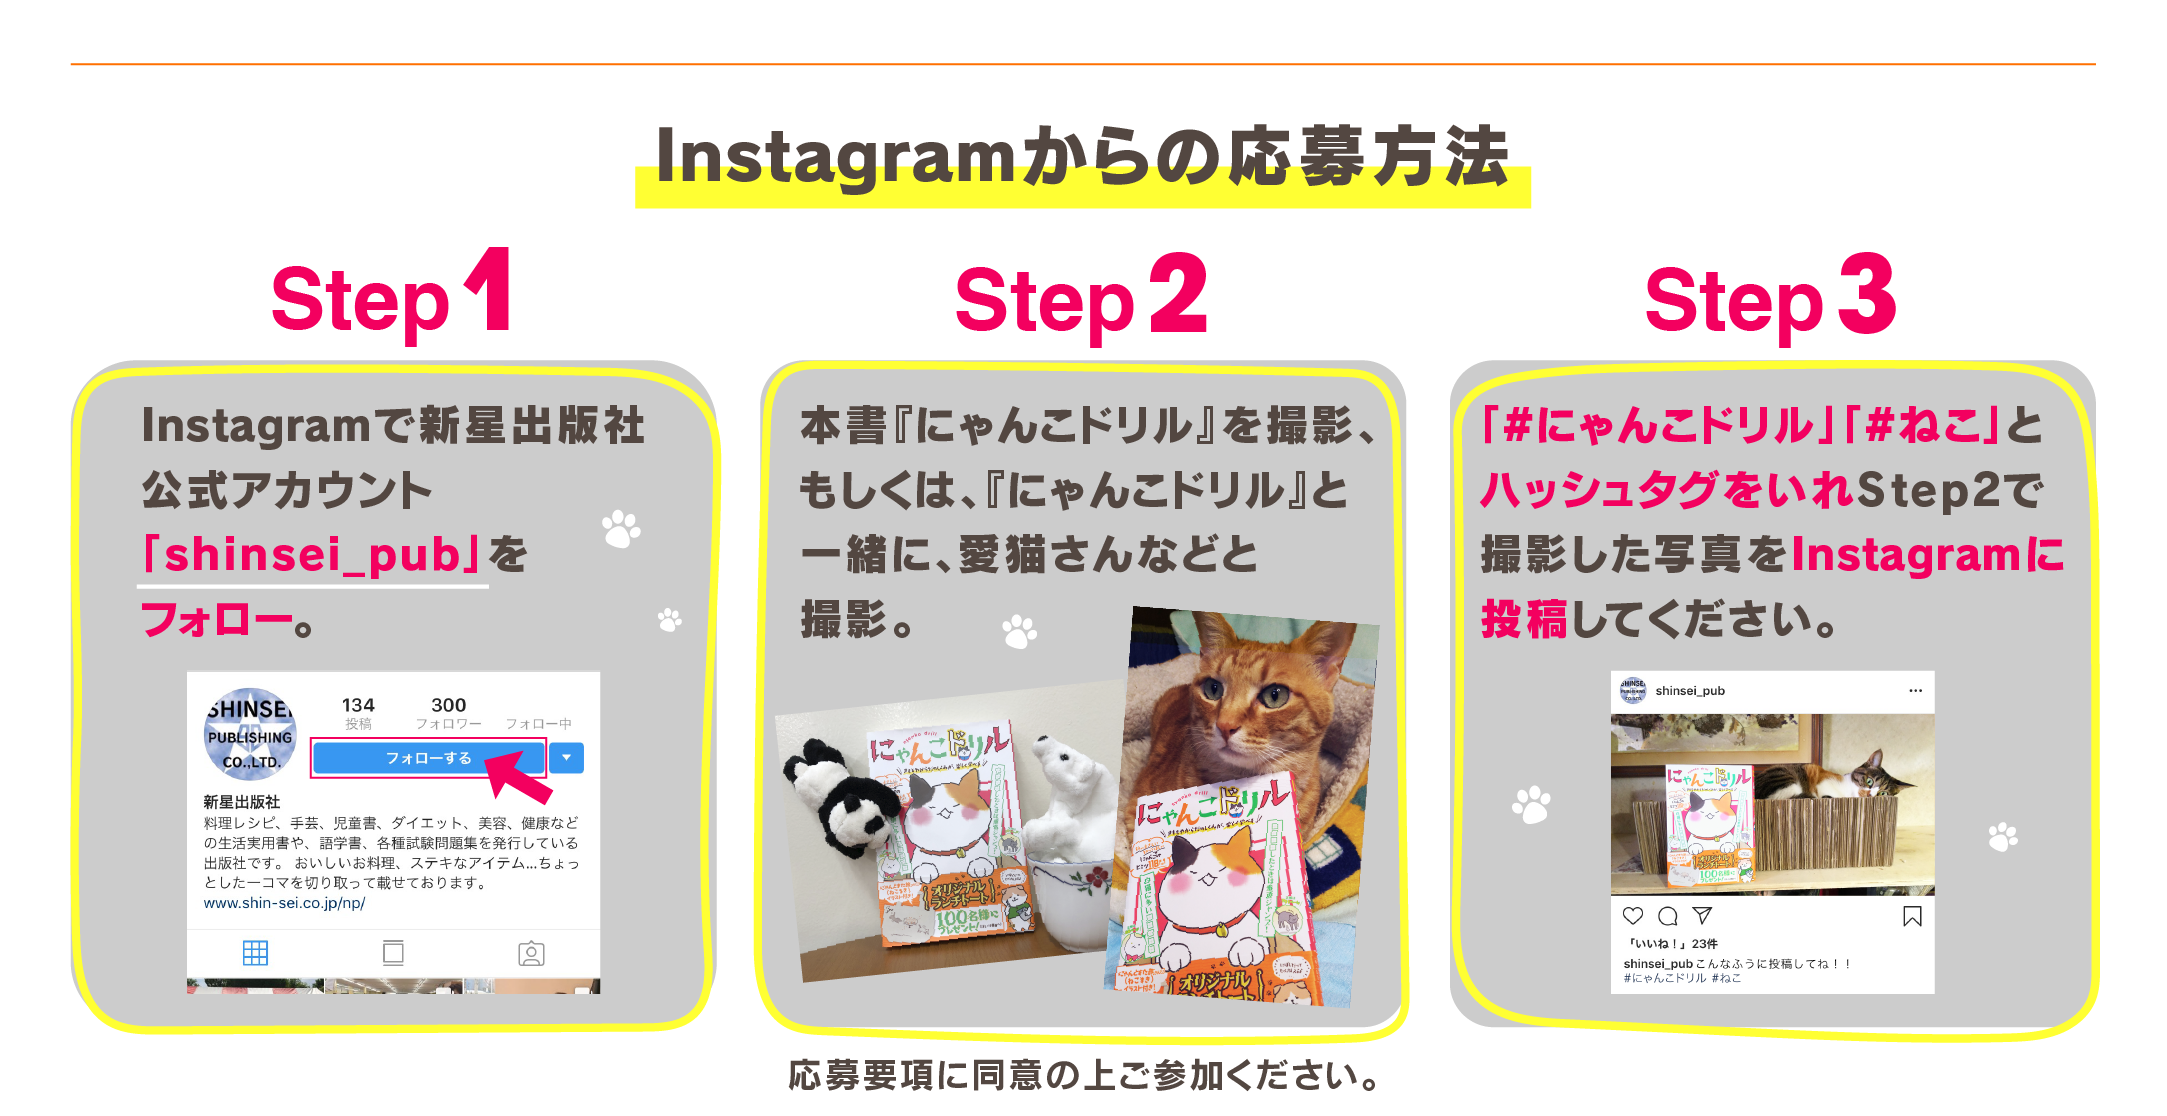 『にゃんこドリル』発売記念プレゼントキャンペーンInstagramからの応募方法：Step1 Instagramで新星出版社公式アカウント「shinsei_pub」をフォロー STEP2 本書『にゃんこドリル』を撮影、もしくは、『にゃんこドリル』と一緒に、愛猫さん、ノラ猫さんetc….と撮影。STEP4 「#にゃんこドリル」「#ねこ」とハッシュタグをいれStep2で撮影した写真をInstagramに投稿してください。